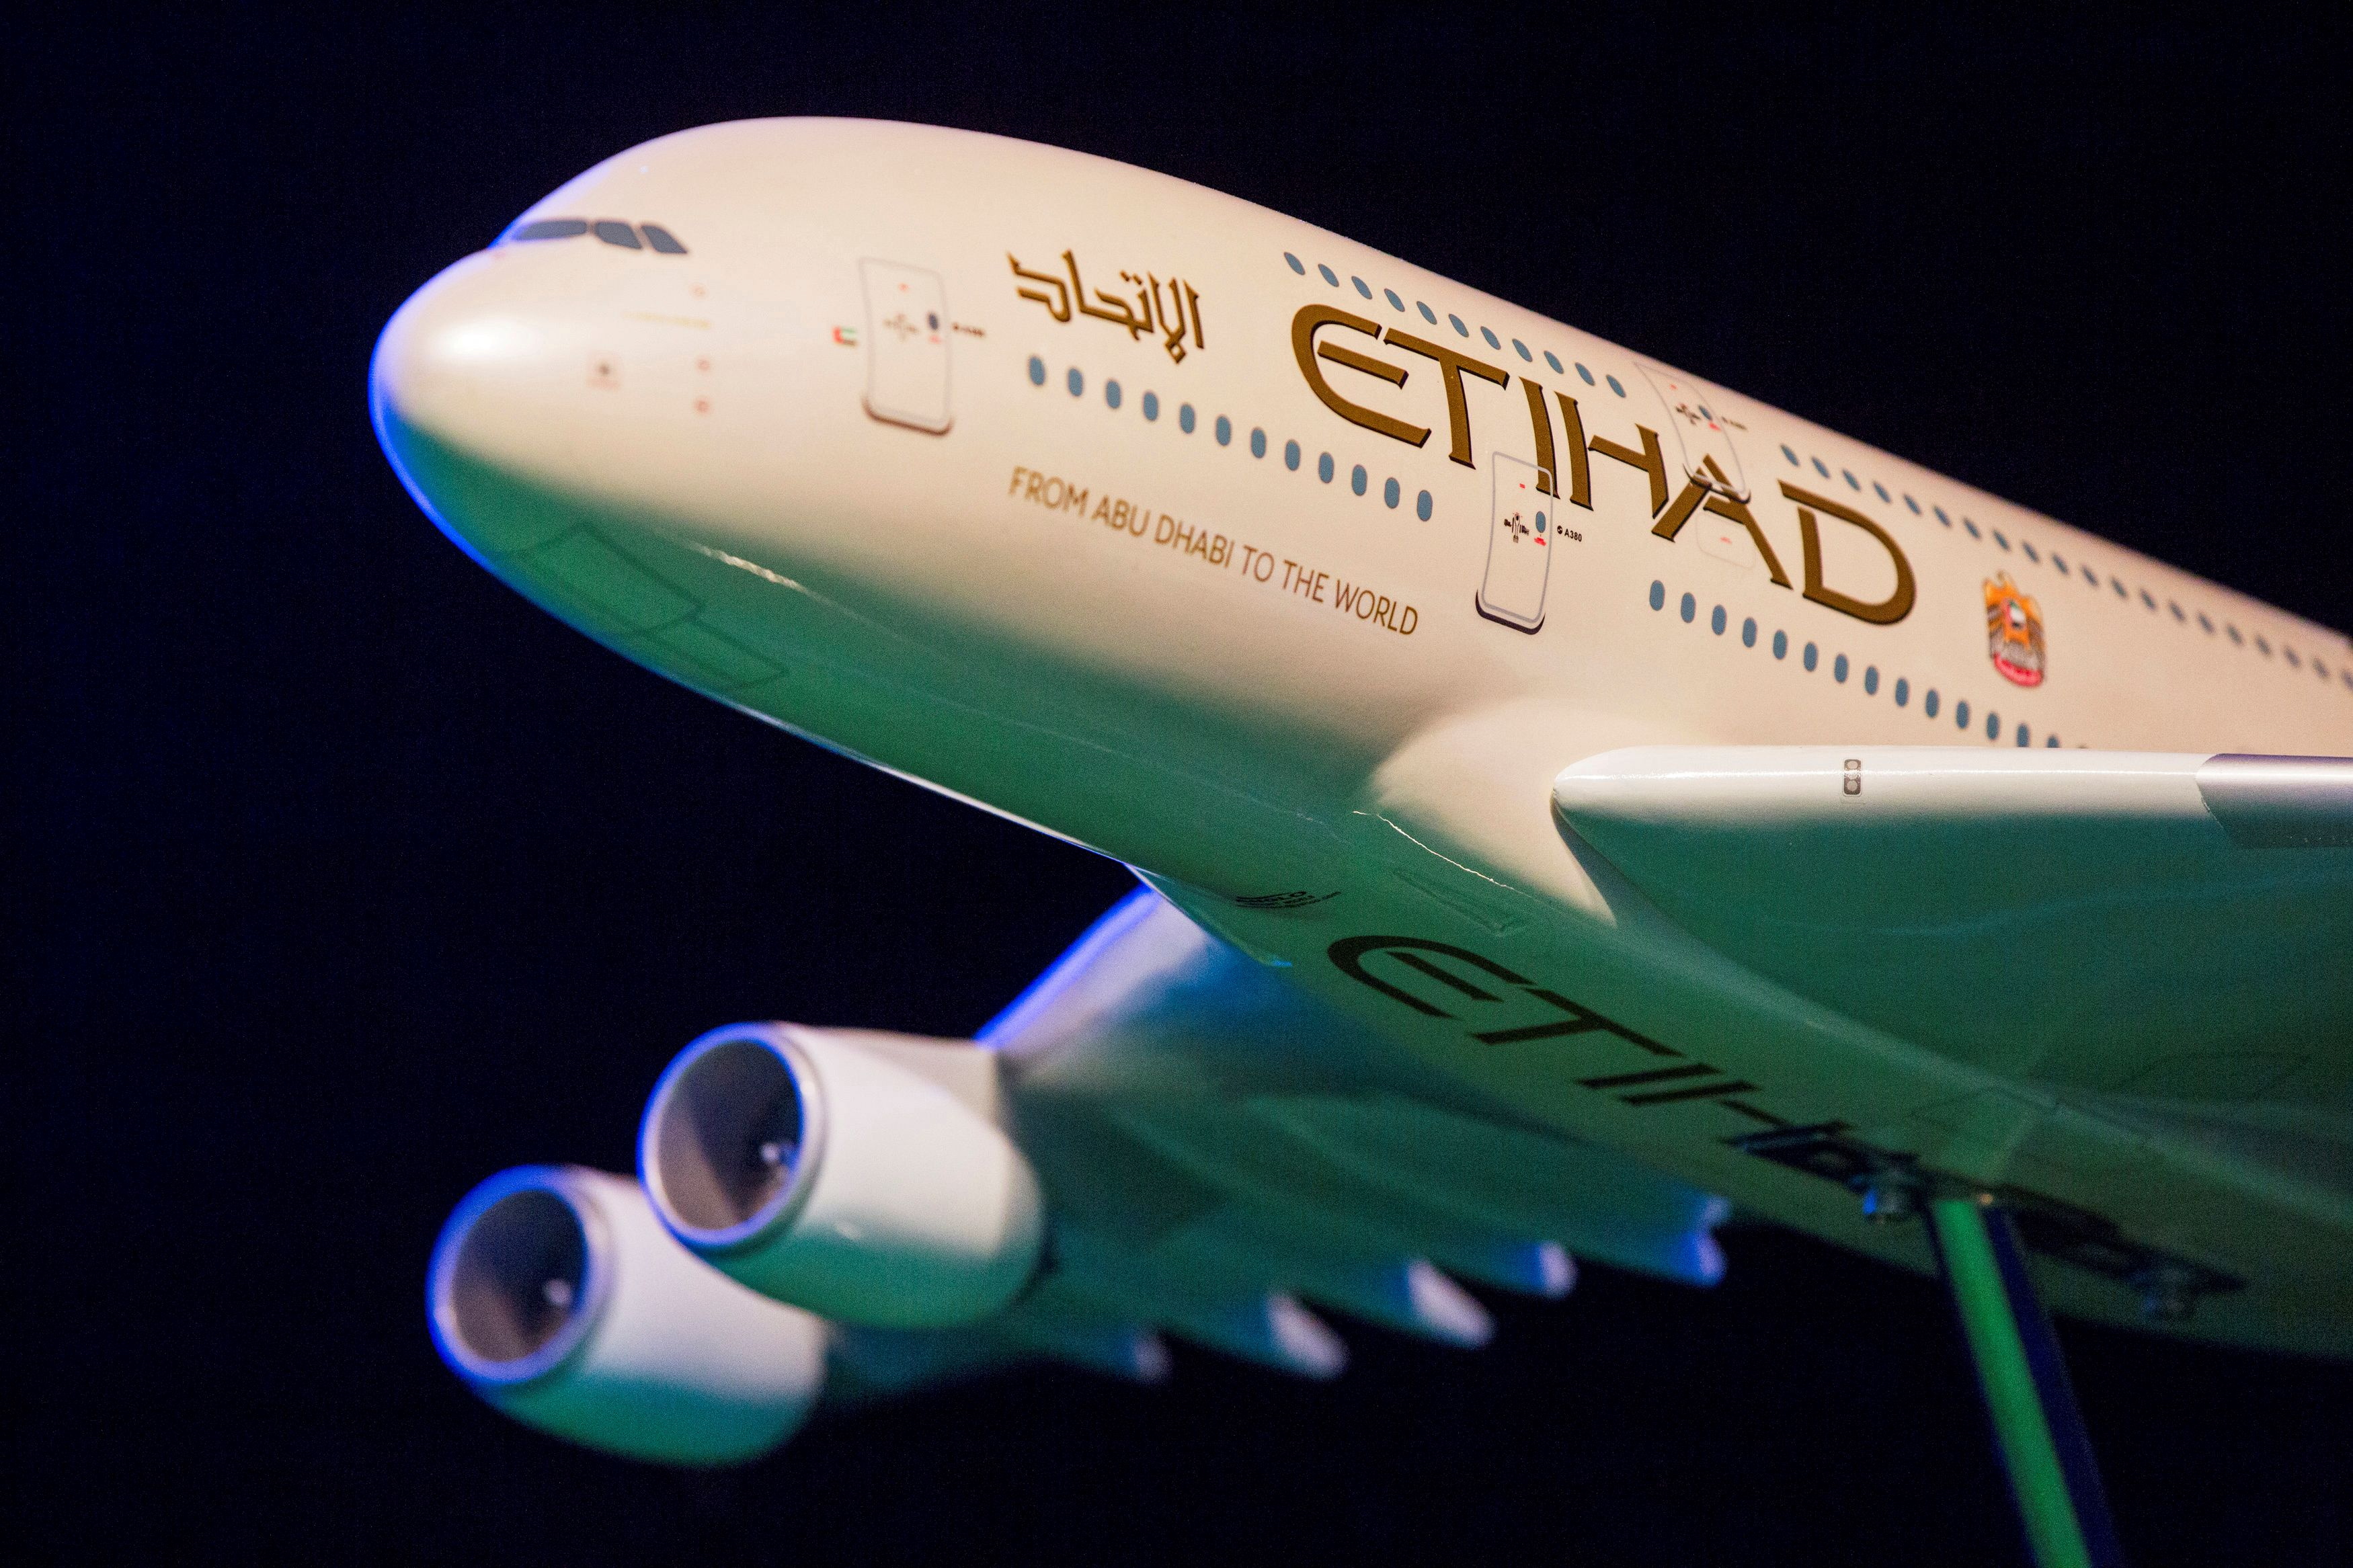 A model Etihad Airways plane is seen in New York, U.S.